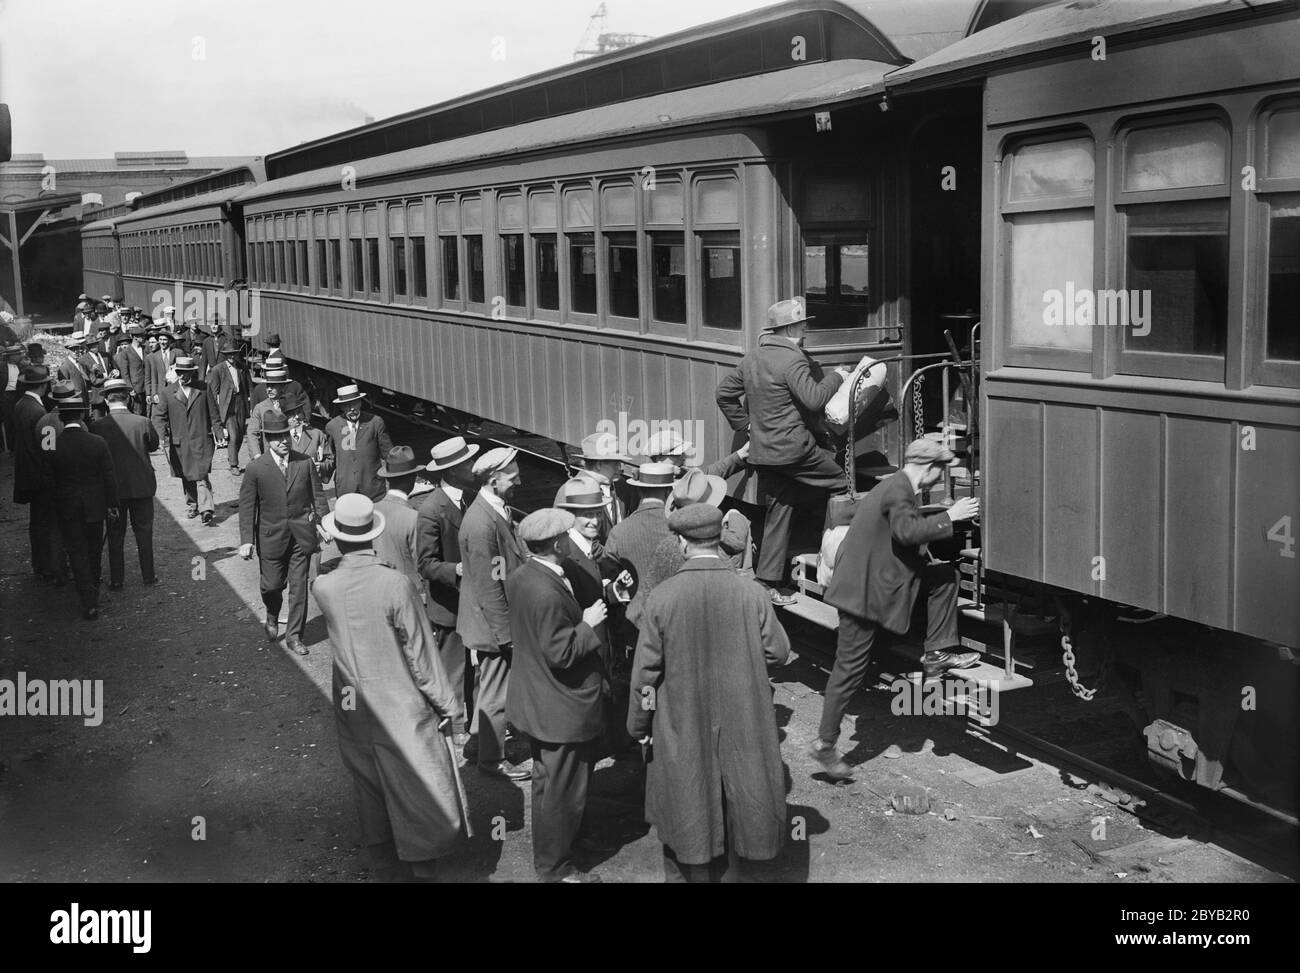 Des recrues américaines se rendant à Camp Upton, une installation militaire américaine, pendant la première Guerre mondiale, Yaphank, long Island, New York, États-Unis, bain News Service, septembre 1917 Banque D'Images